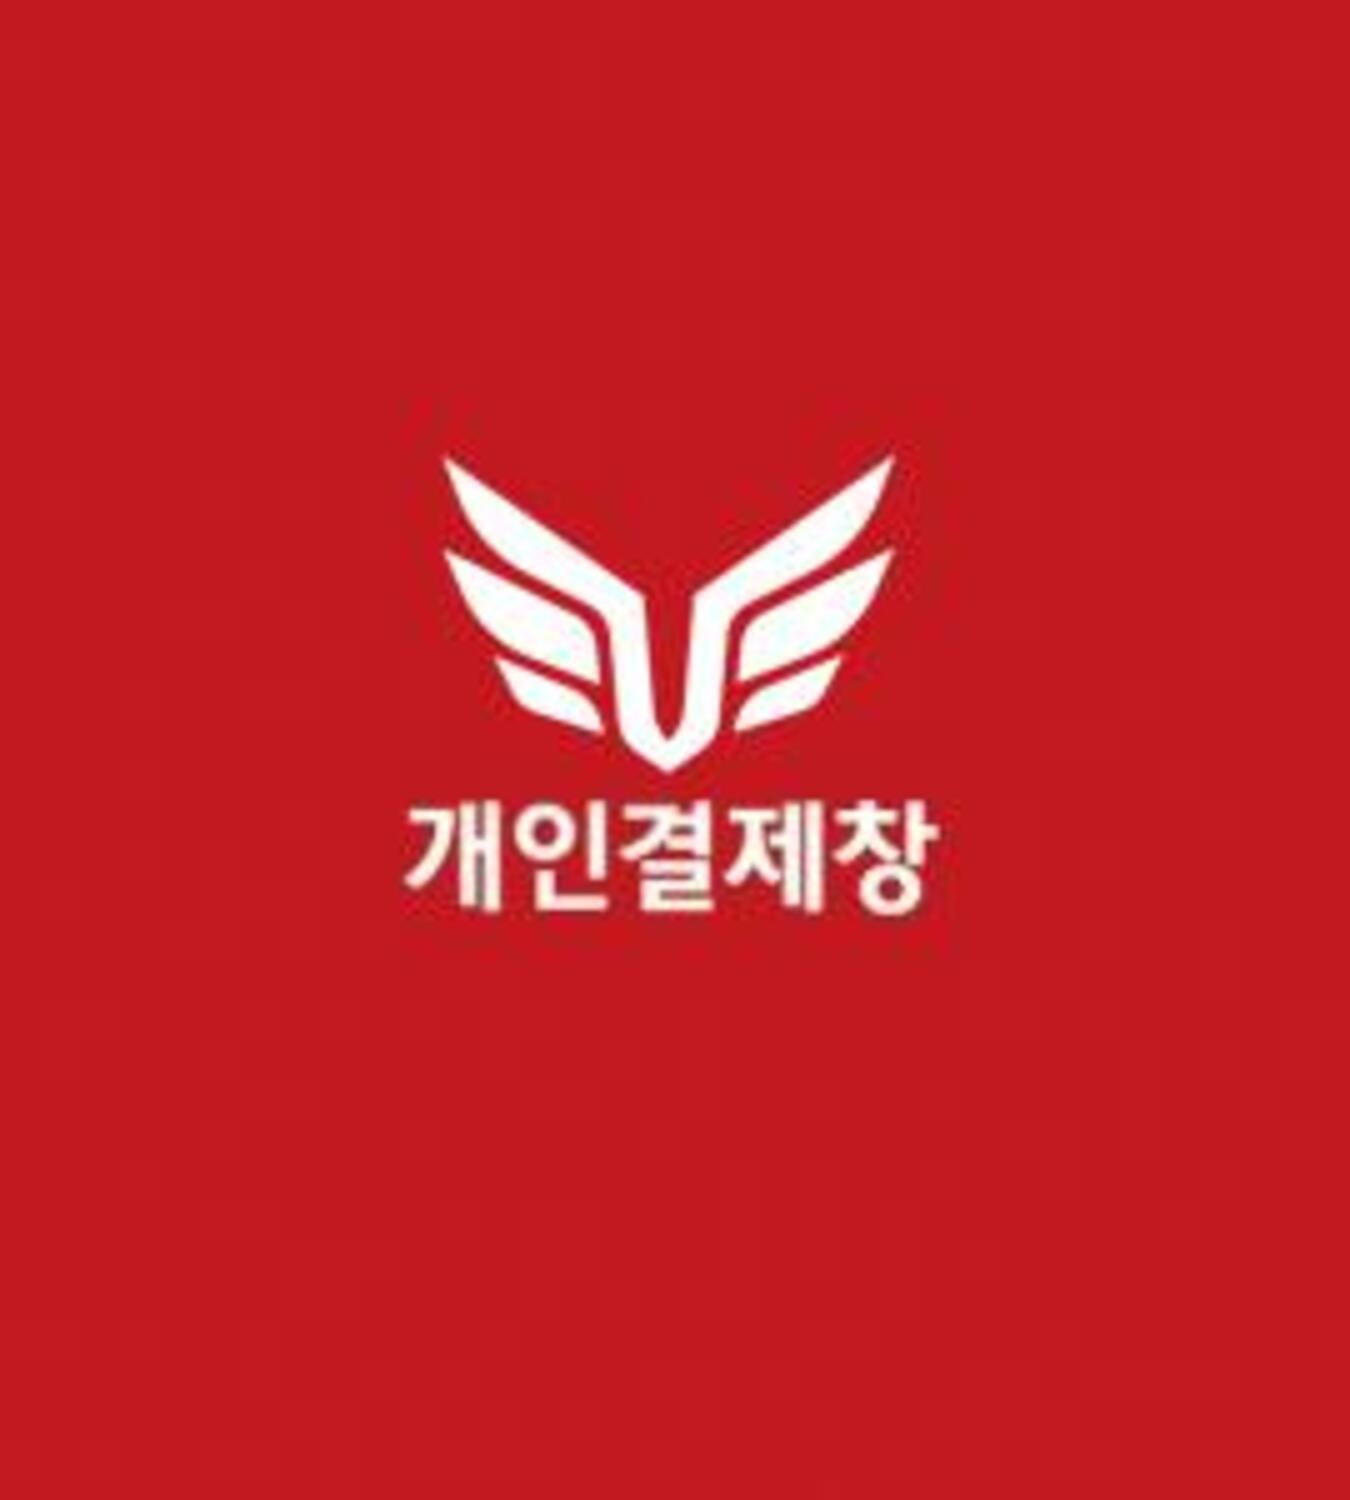 ★부평구문화재단 고객님 개인결제창★